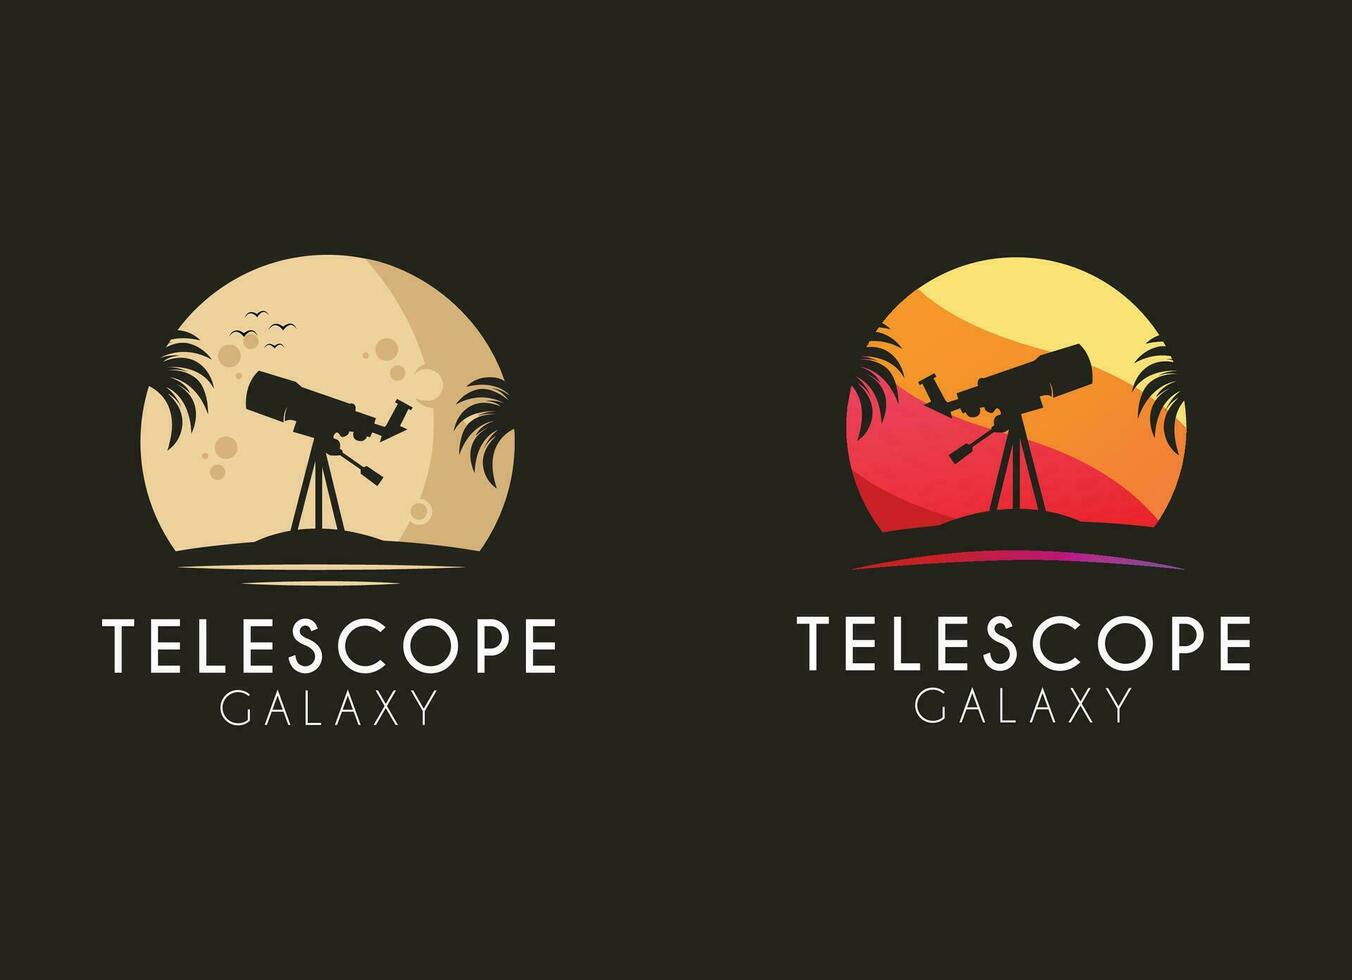 Telescope logo design. Telescope and moon logo design vector